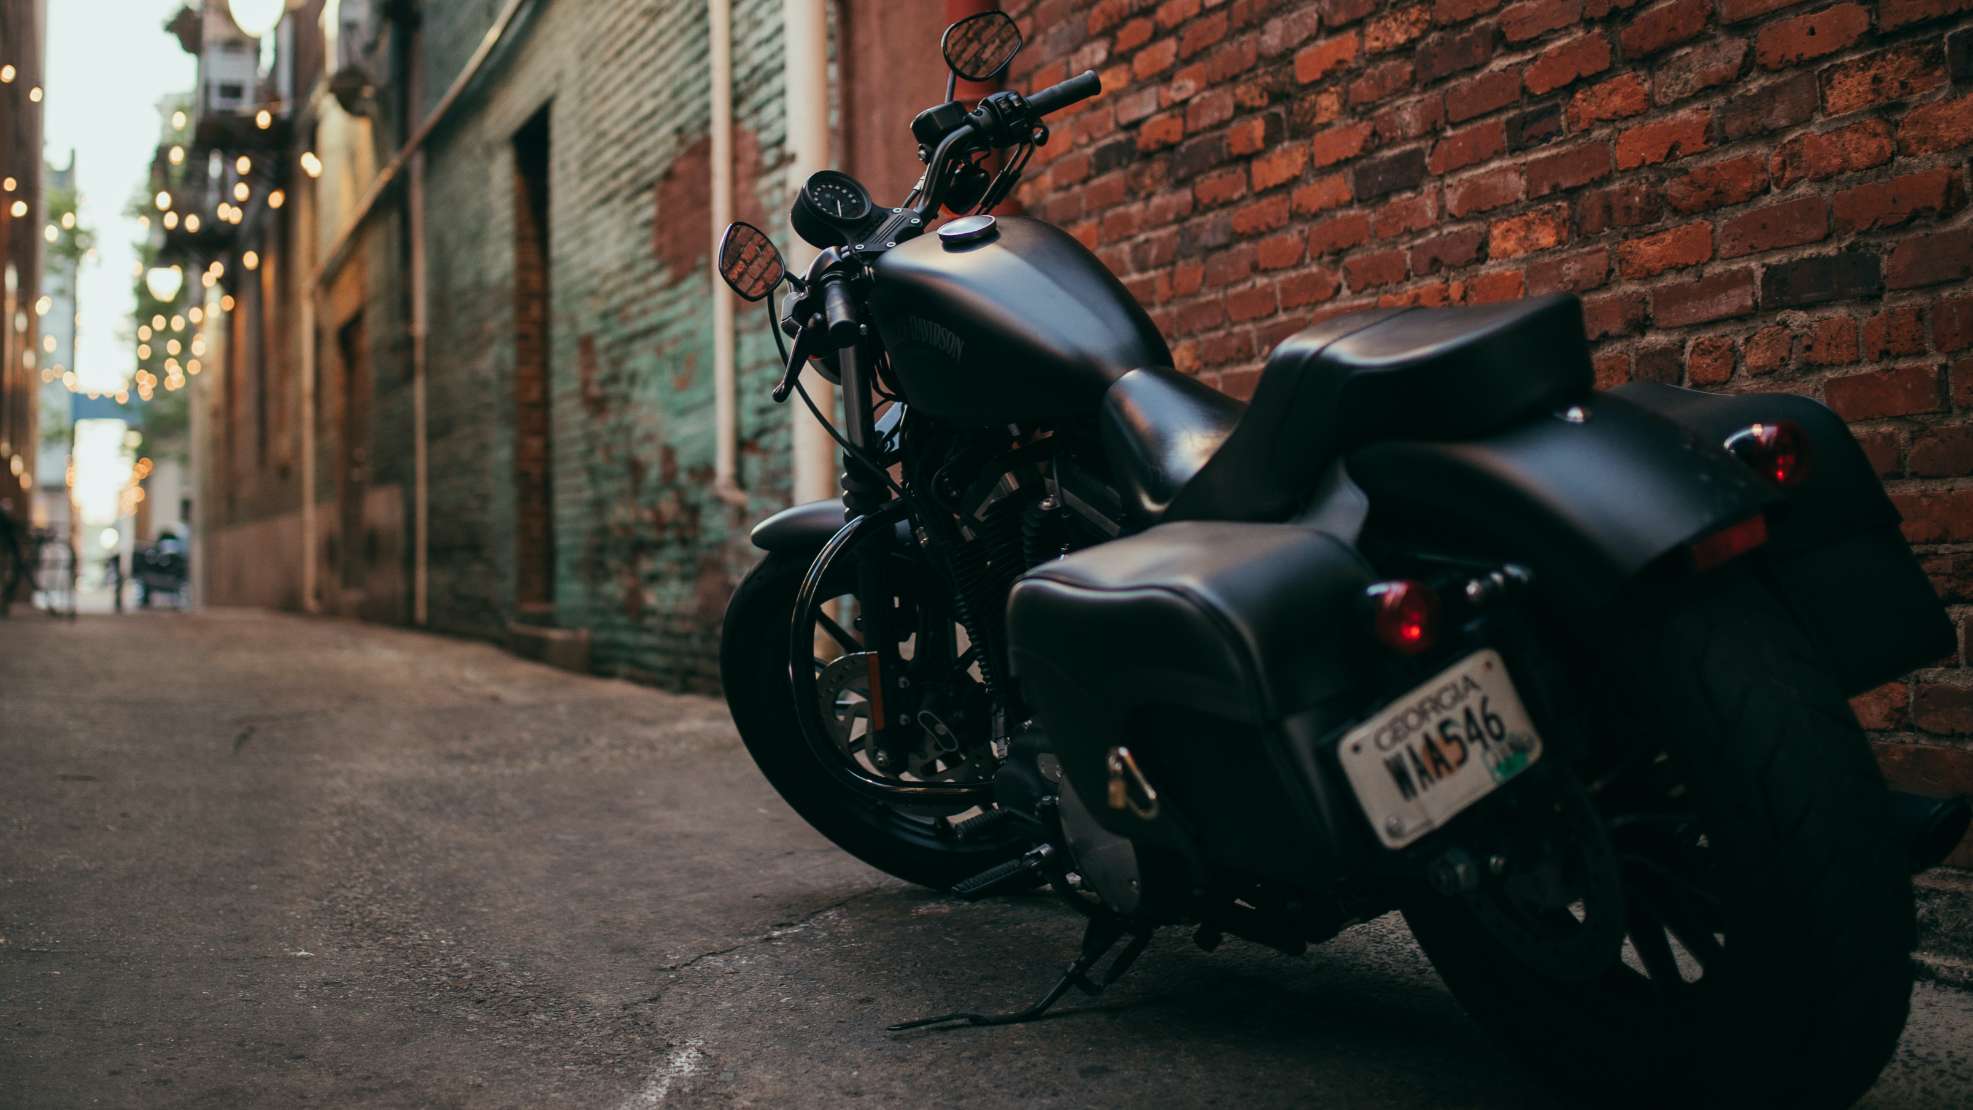 Saiba tudo sobre seguro para moto e descubra como escolher a melhor opção para você